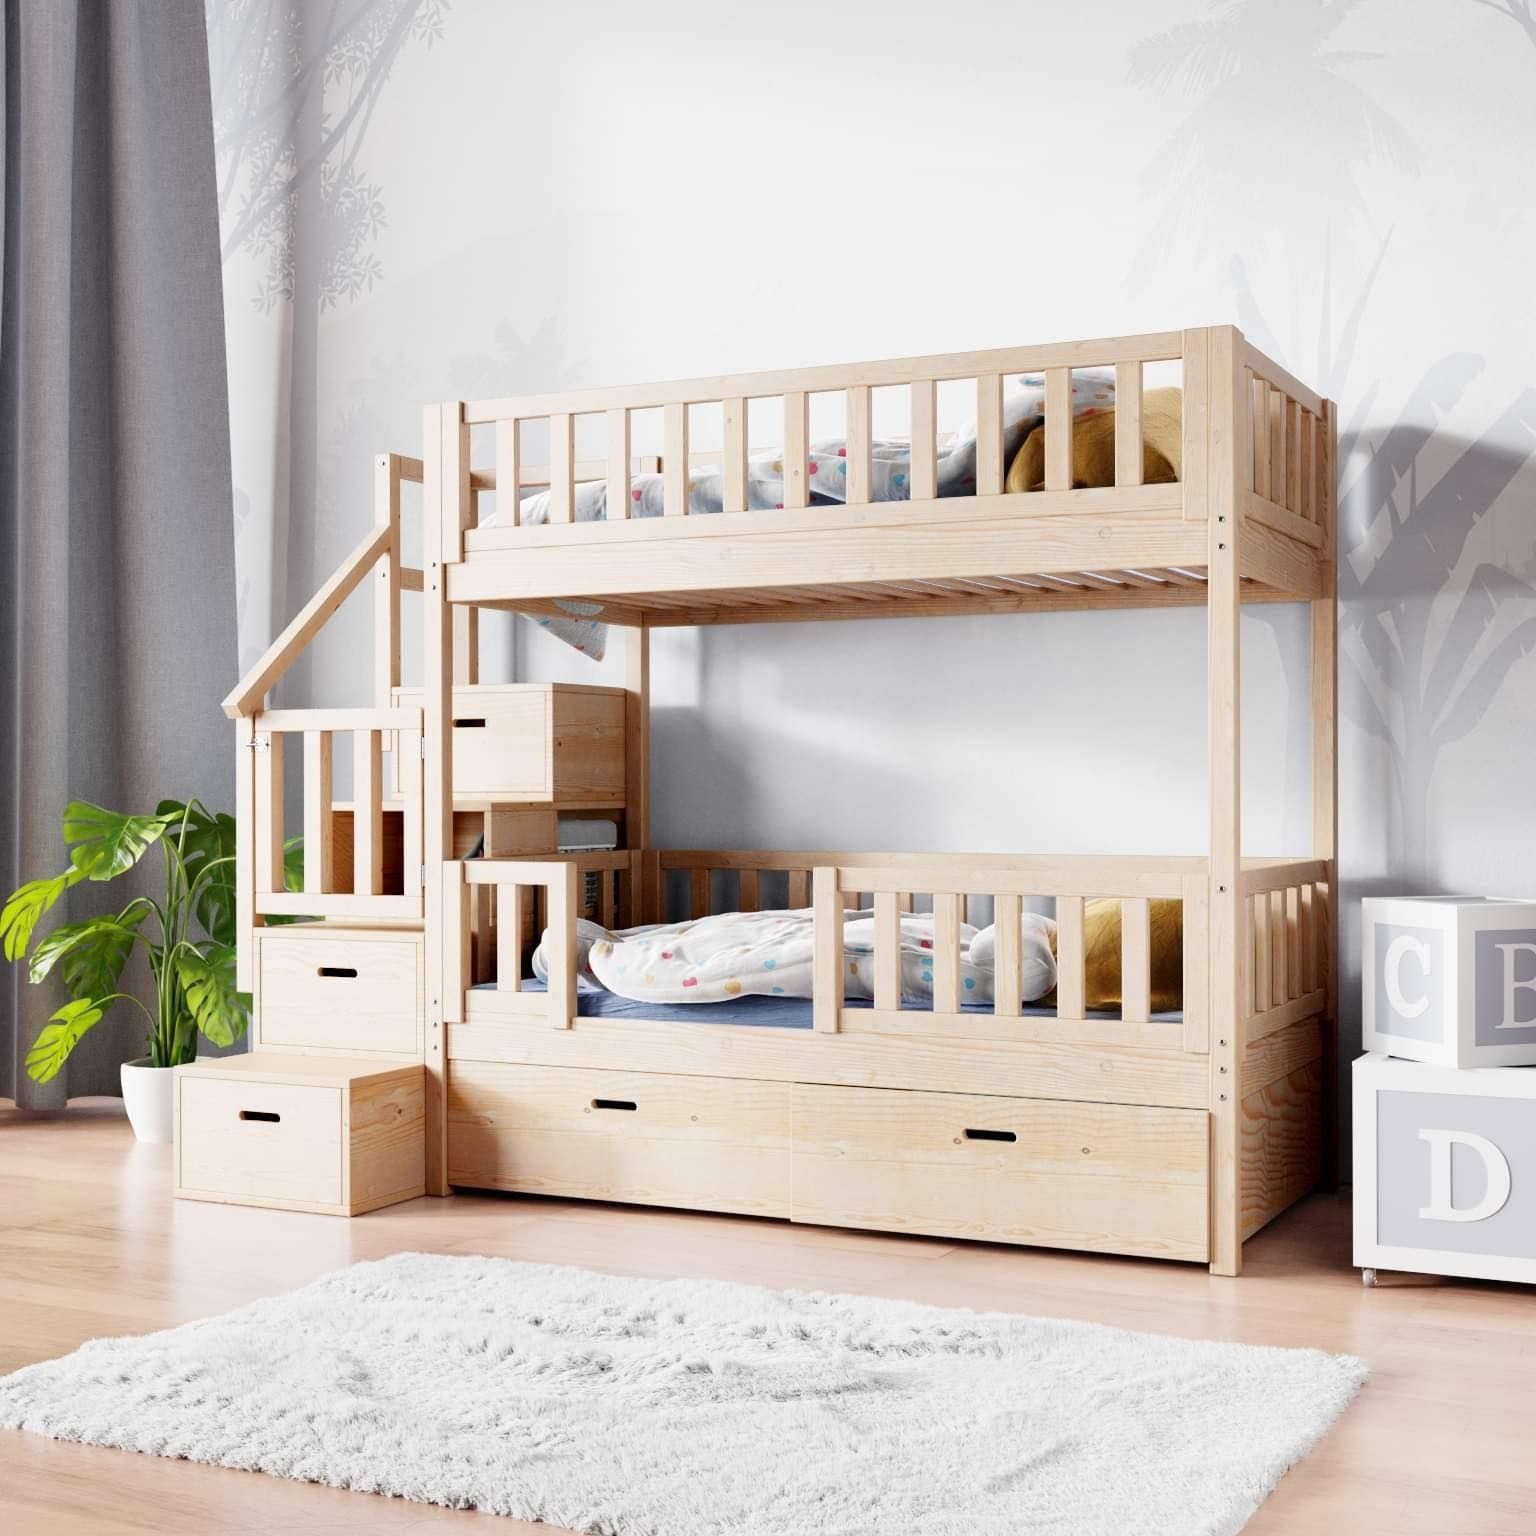 Drewniane łóżko dla dziecka - łóżeczka dla chłopca i dziewczynki